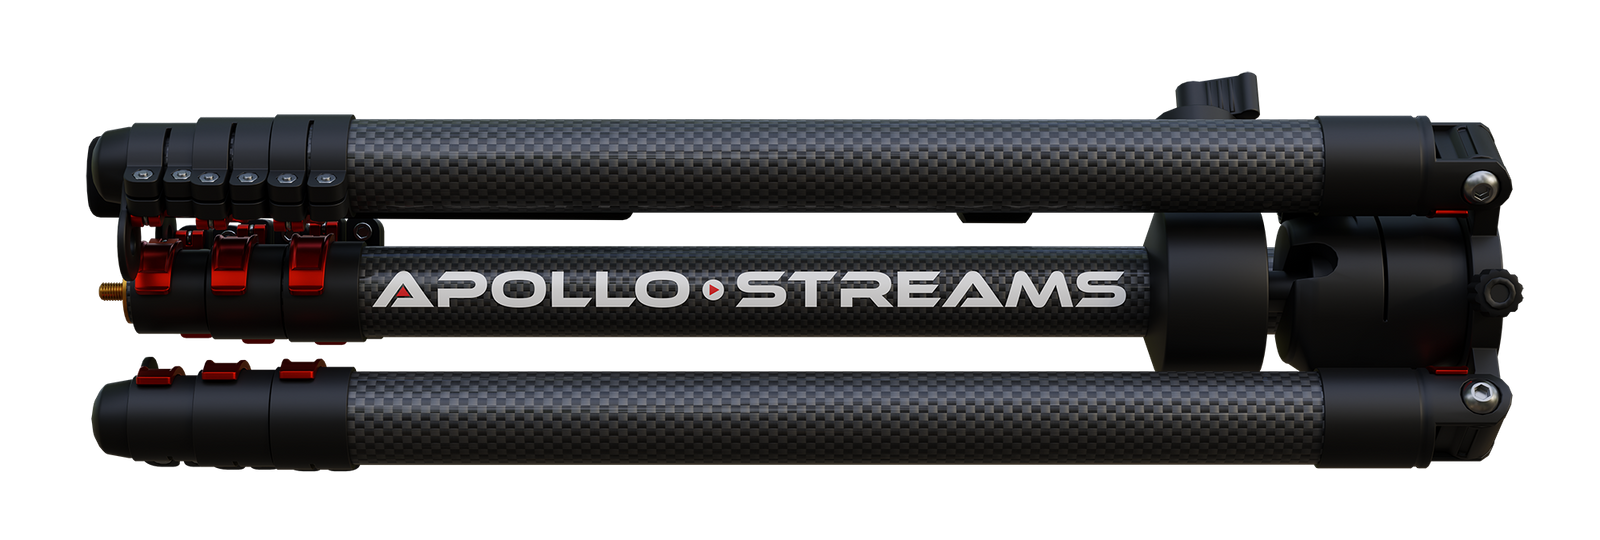 Apollo Streams Carbon Fiber Tripod